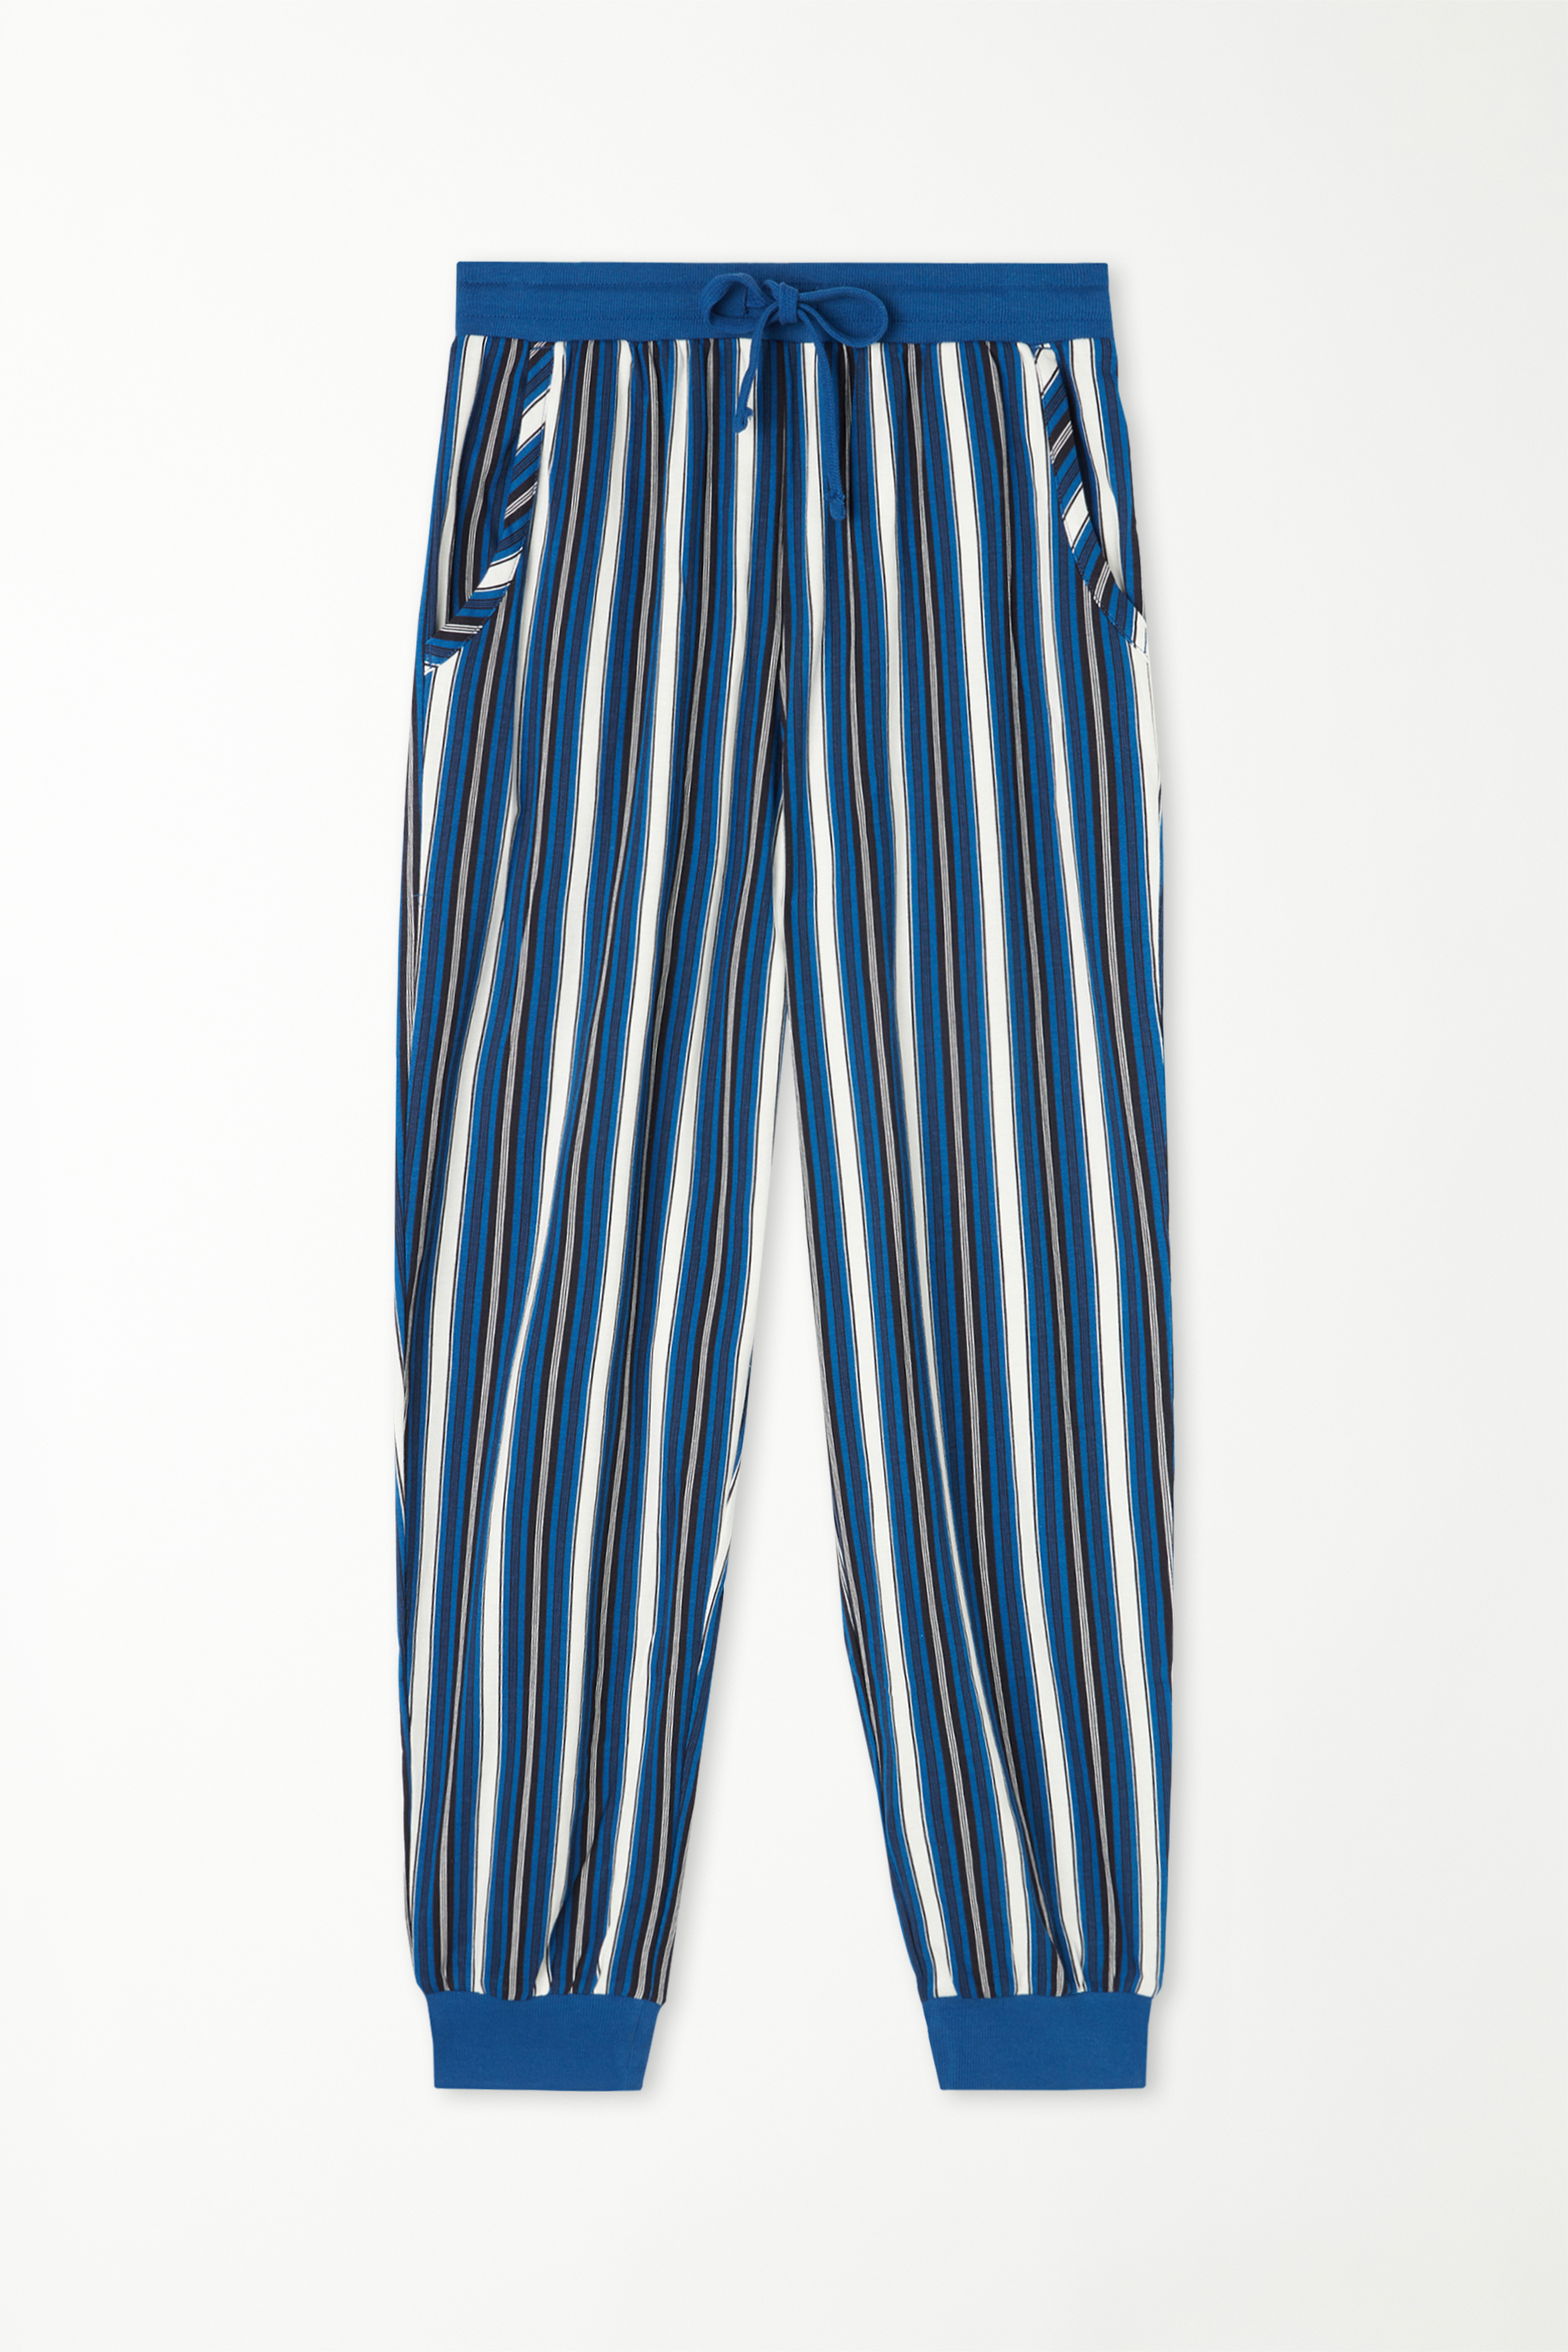 Pantaloni Lungi din Bumbac cu Șiret